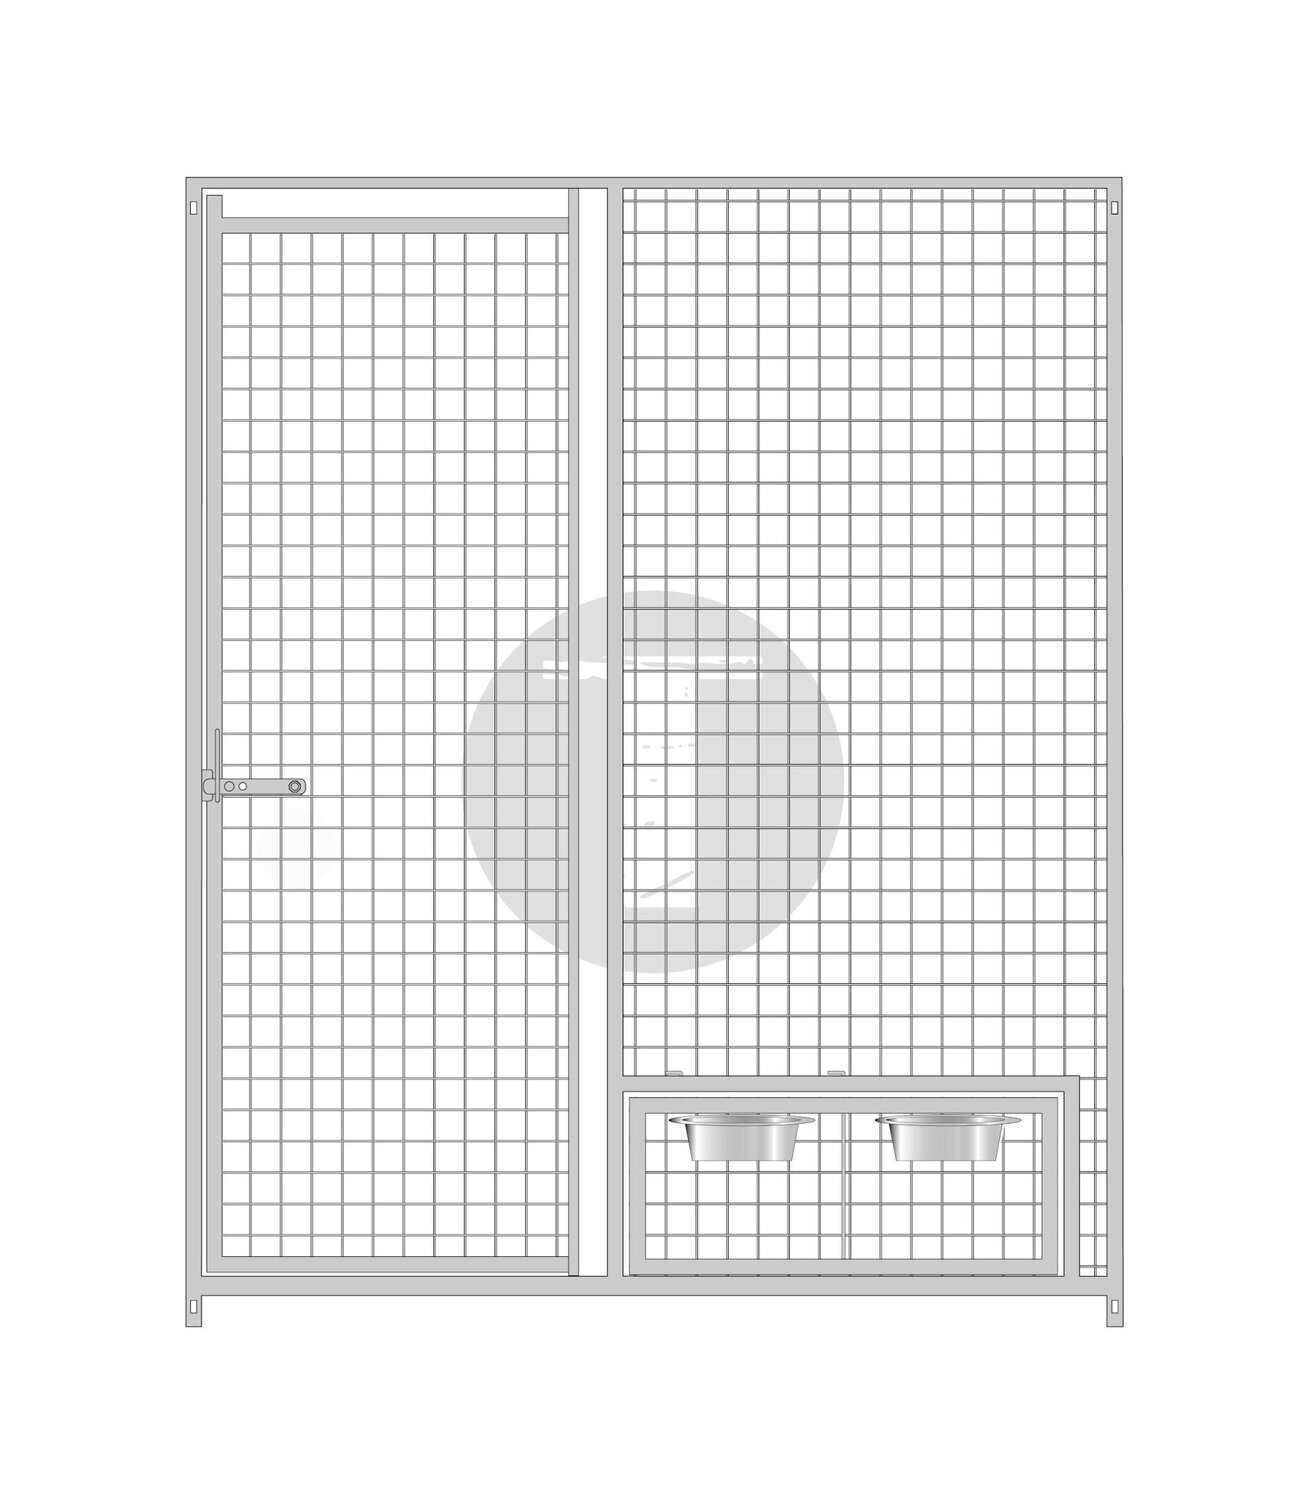 Gitterelement Tür links und schwenkbarem Futterset 5 x 5 cm - 184 cm hoch - B-WARE, Länge: 150cm